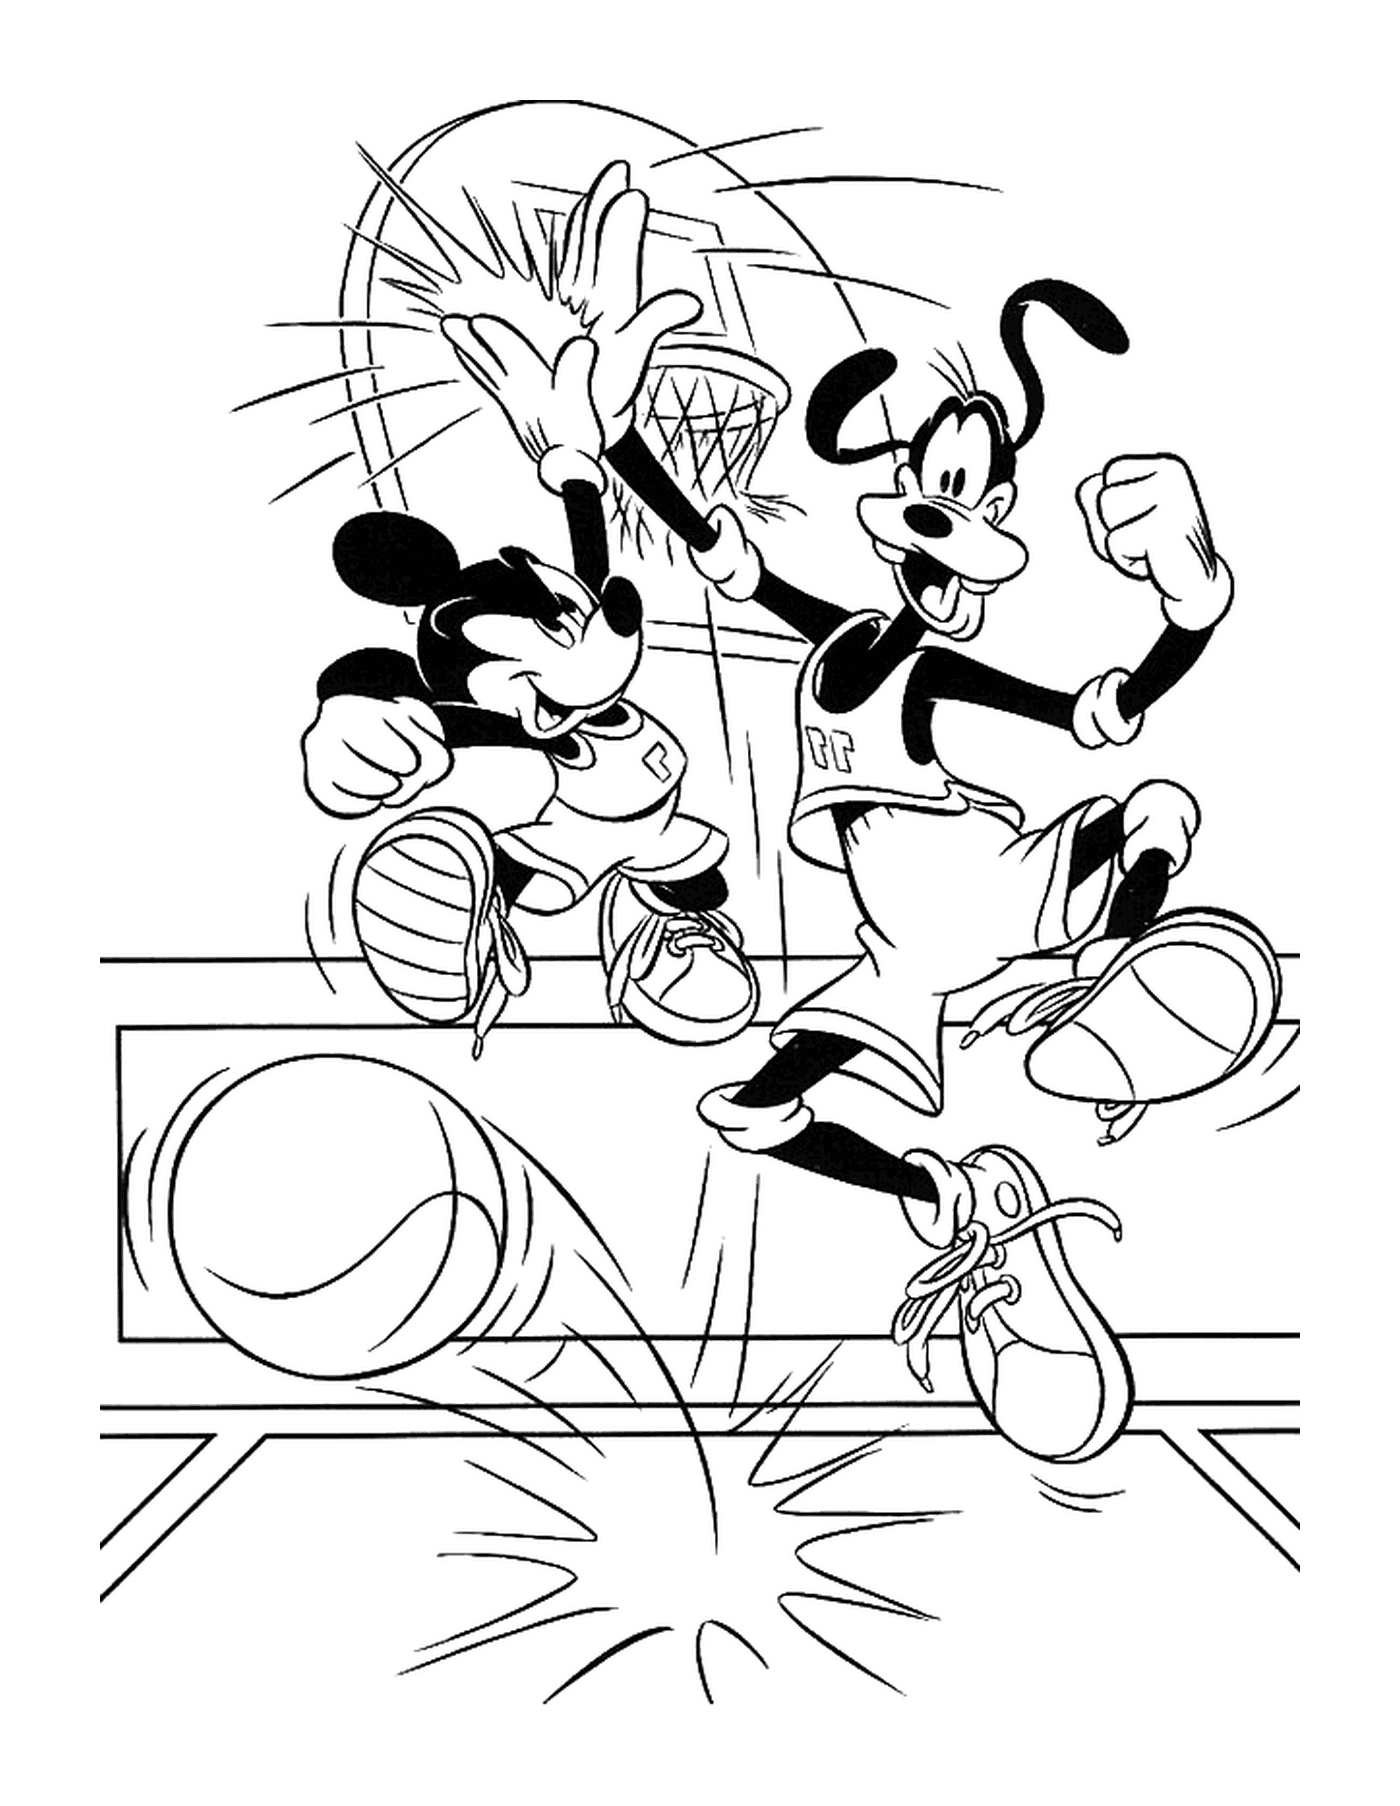  Dingo and Mickey play basketball 